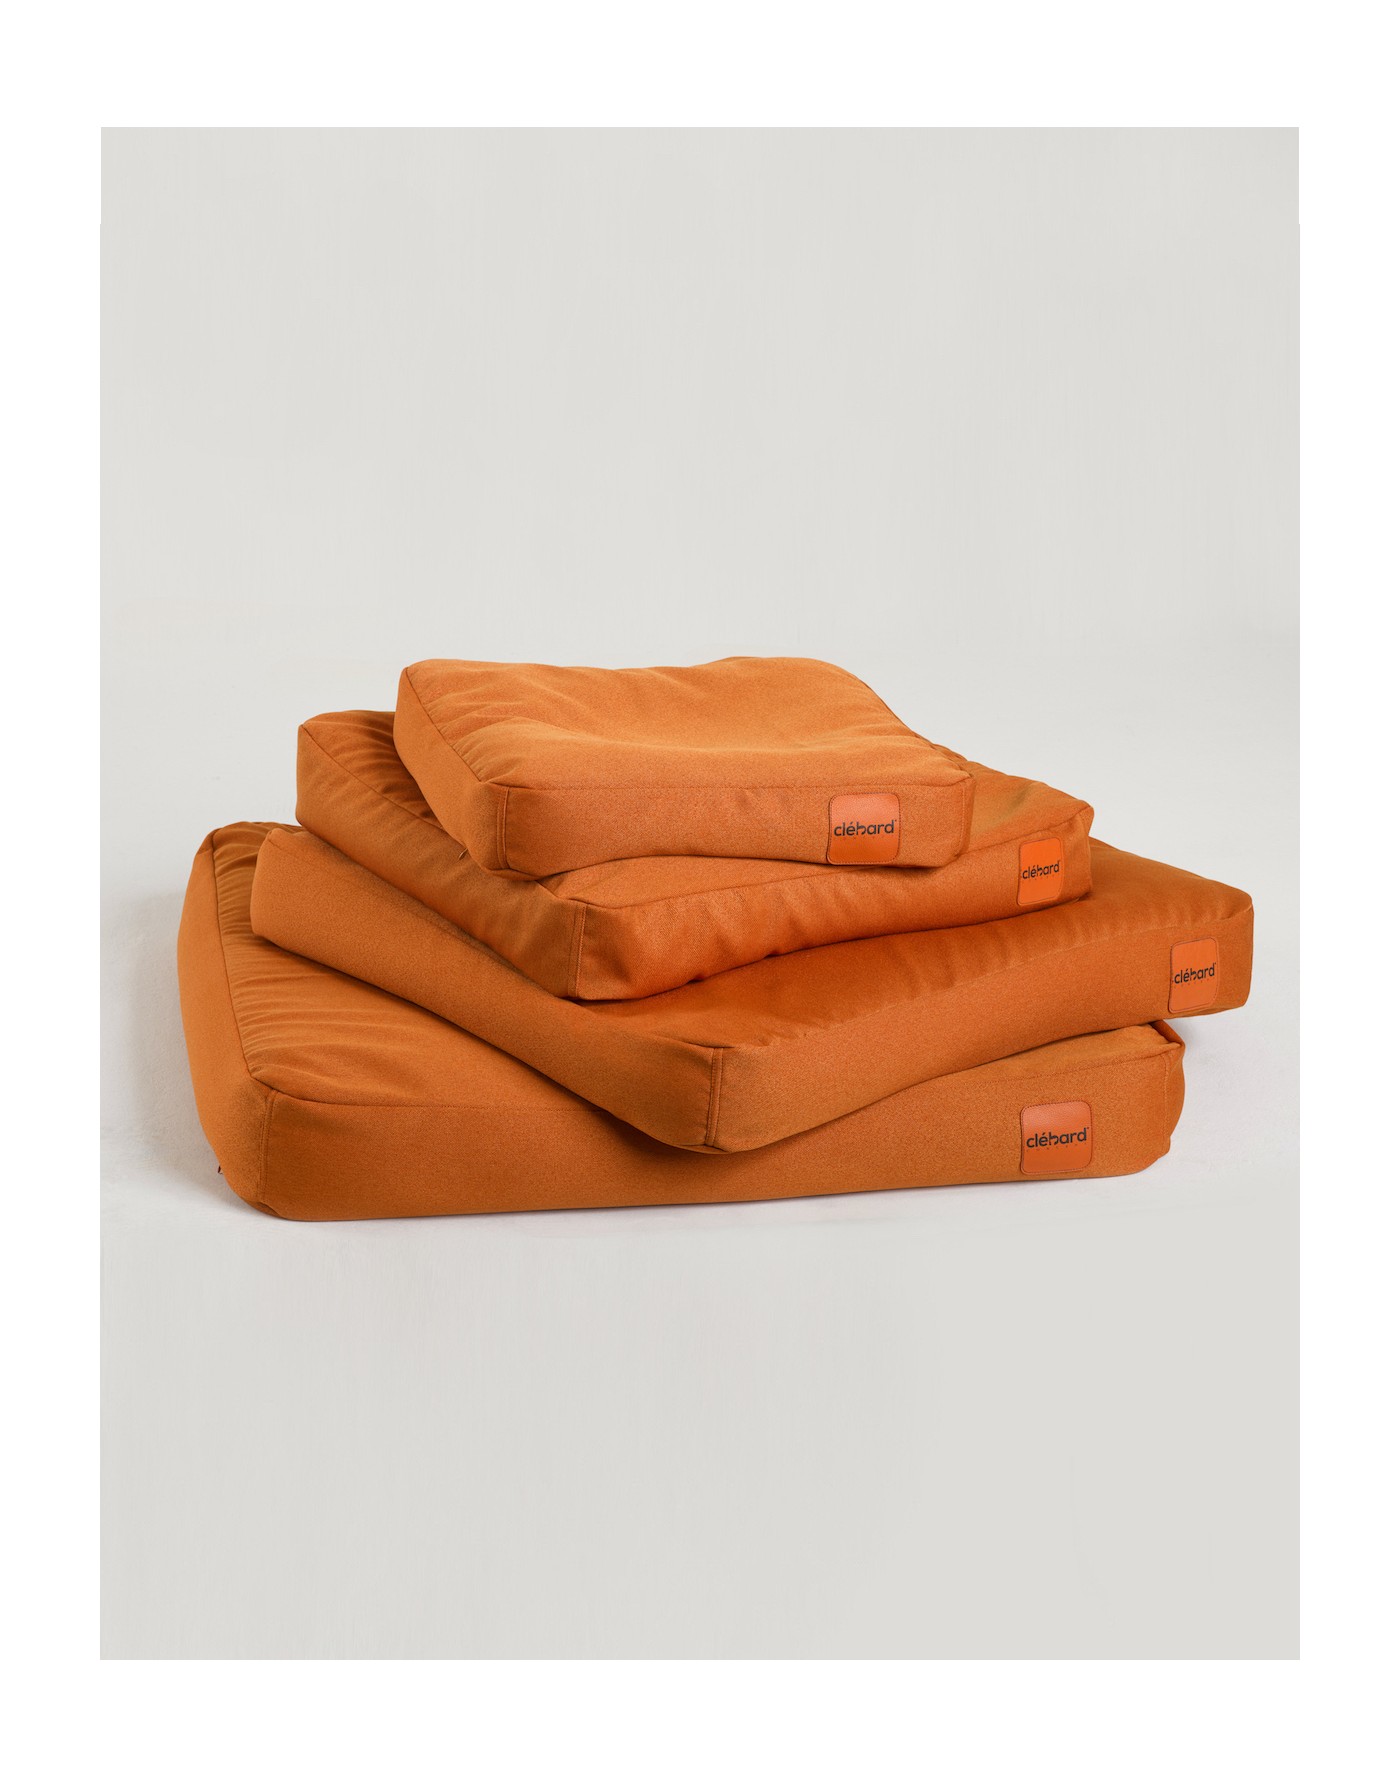 Coussin pour chien design - Sofa - Orange